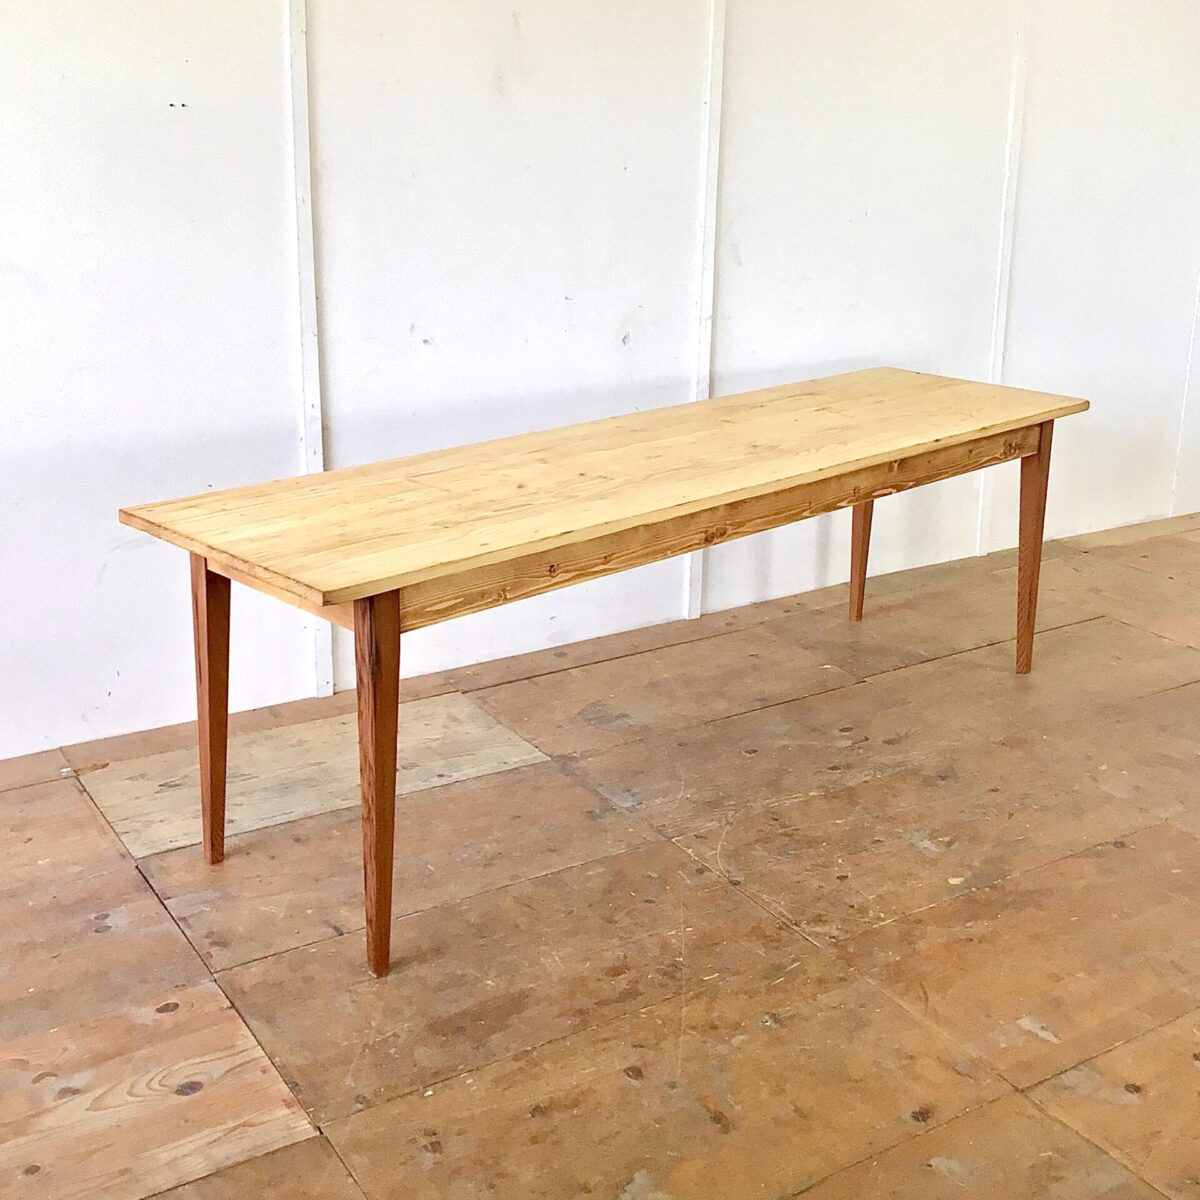 Tannenholz Biedermeiertisch 250x70cm Höhe 77cm. Dieser schlichte lange Holztisch haben wir bei der Restaurierung möglichst geradlinig und Kantig belassen. Der Tisch ist mit Naturöl behandelt. Die Tischbeine sind aus Lärchenholz. 